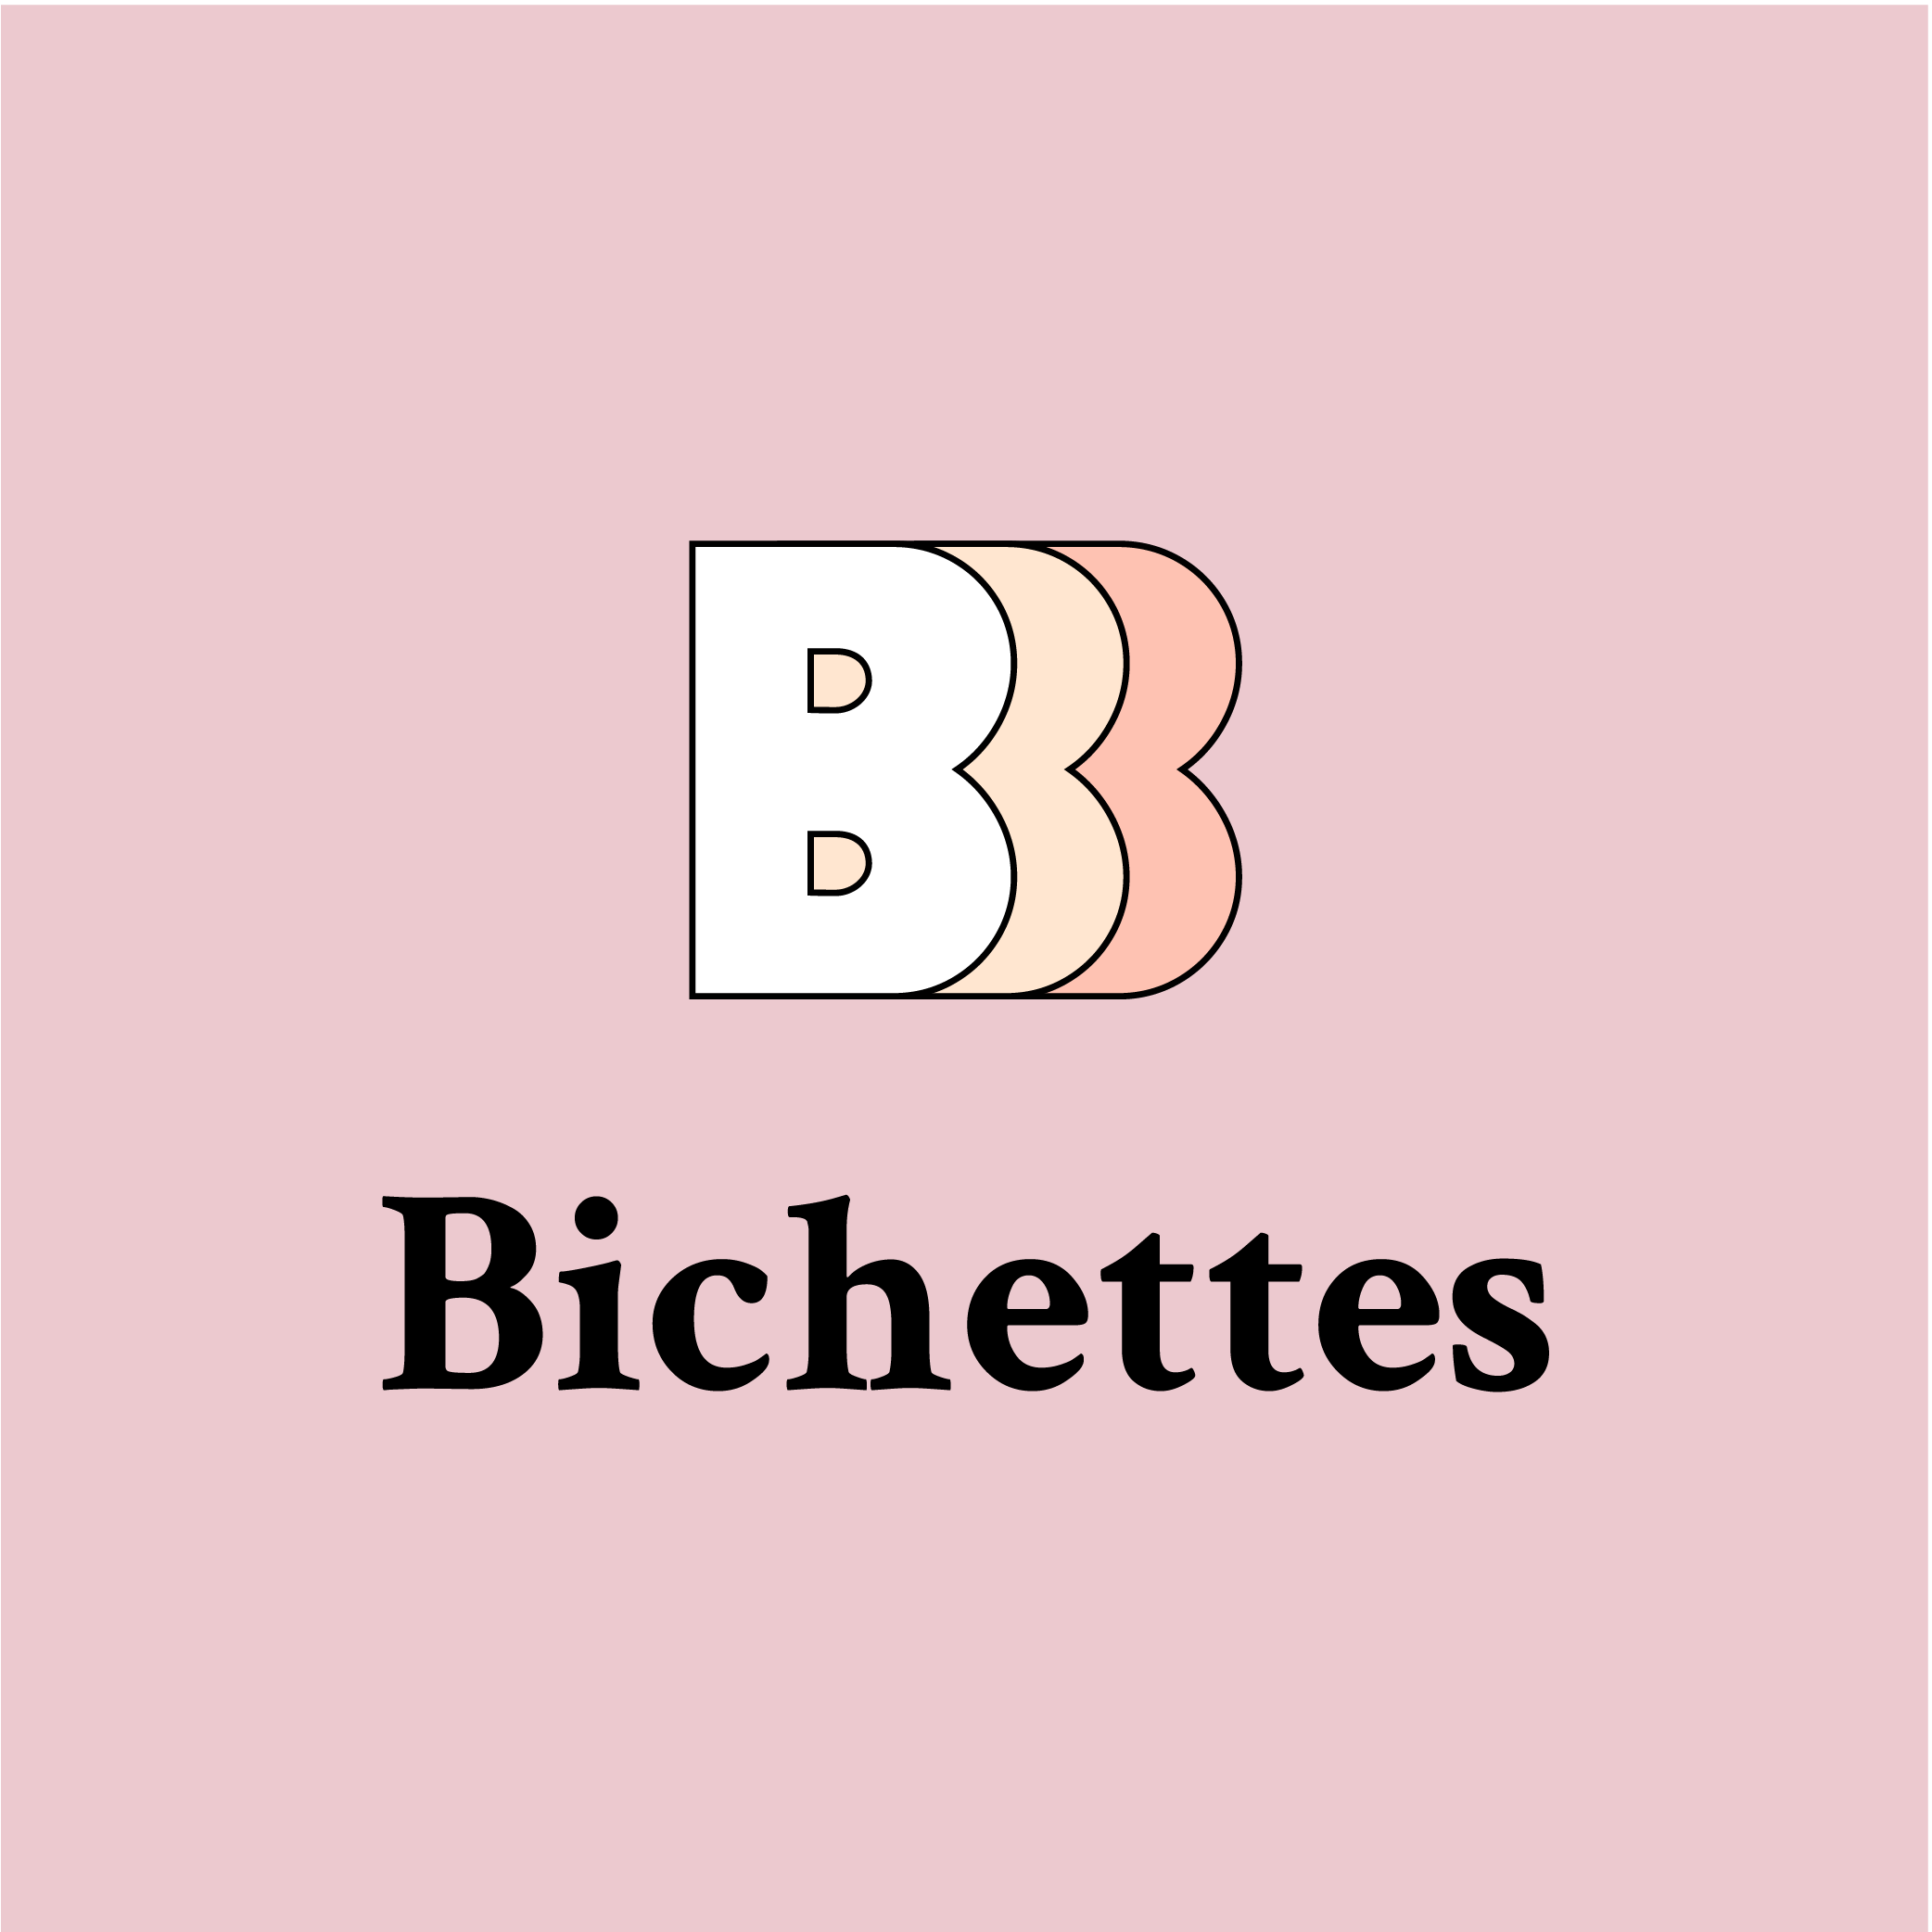 Bichettes